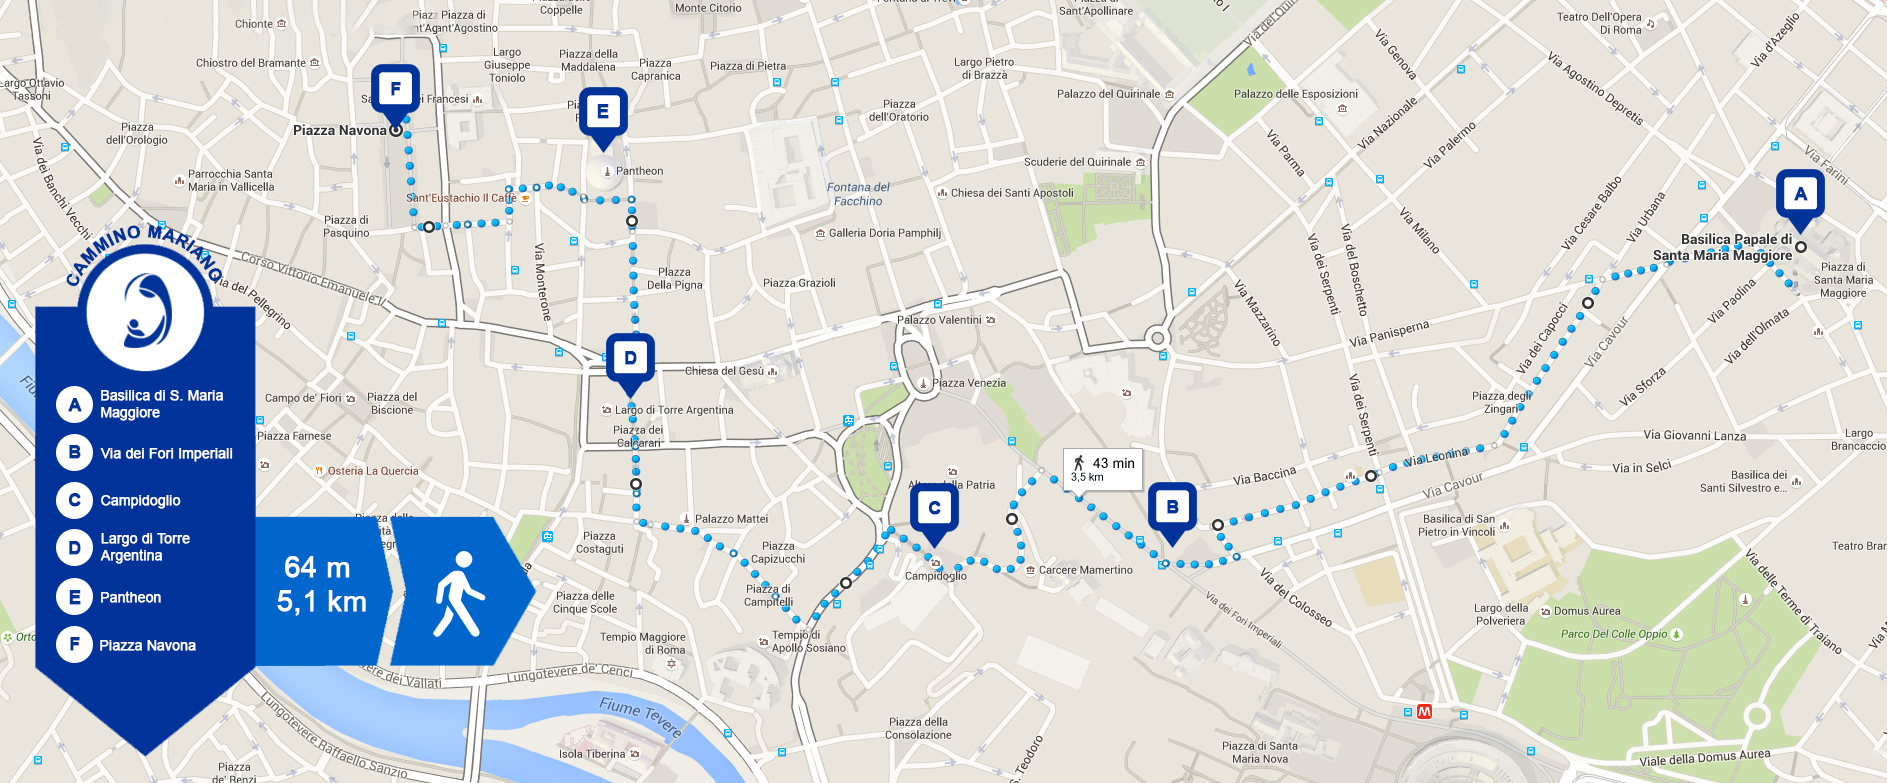 Jubileo 2015: mapa y paradas principales del Camino Mariano